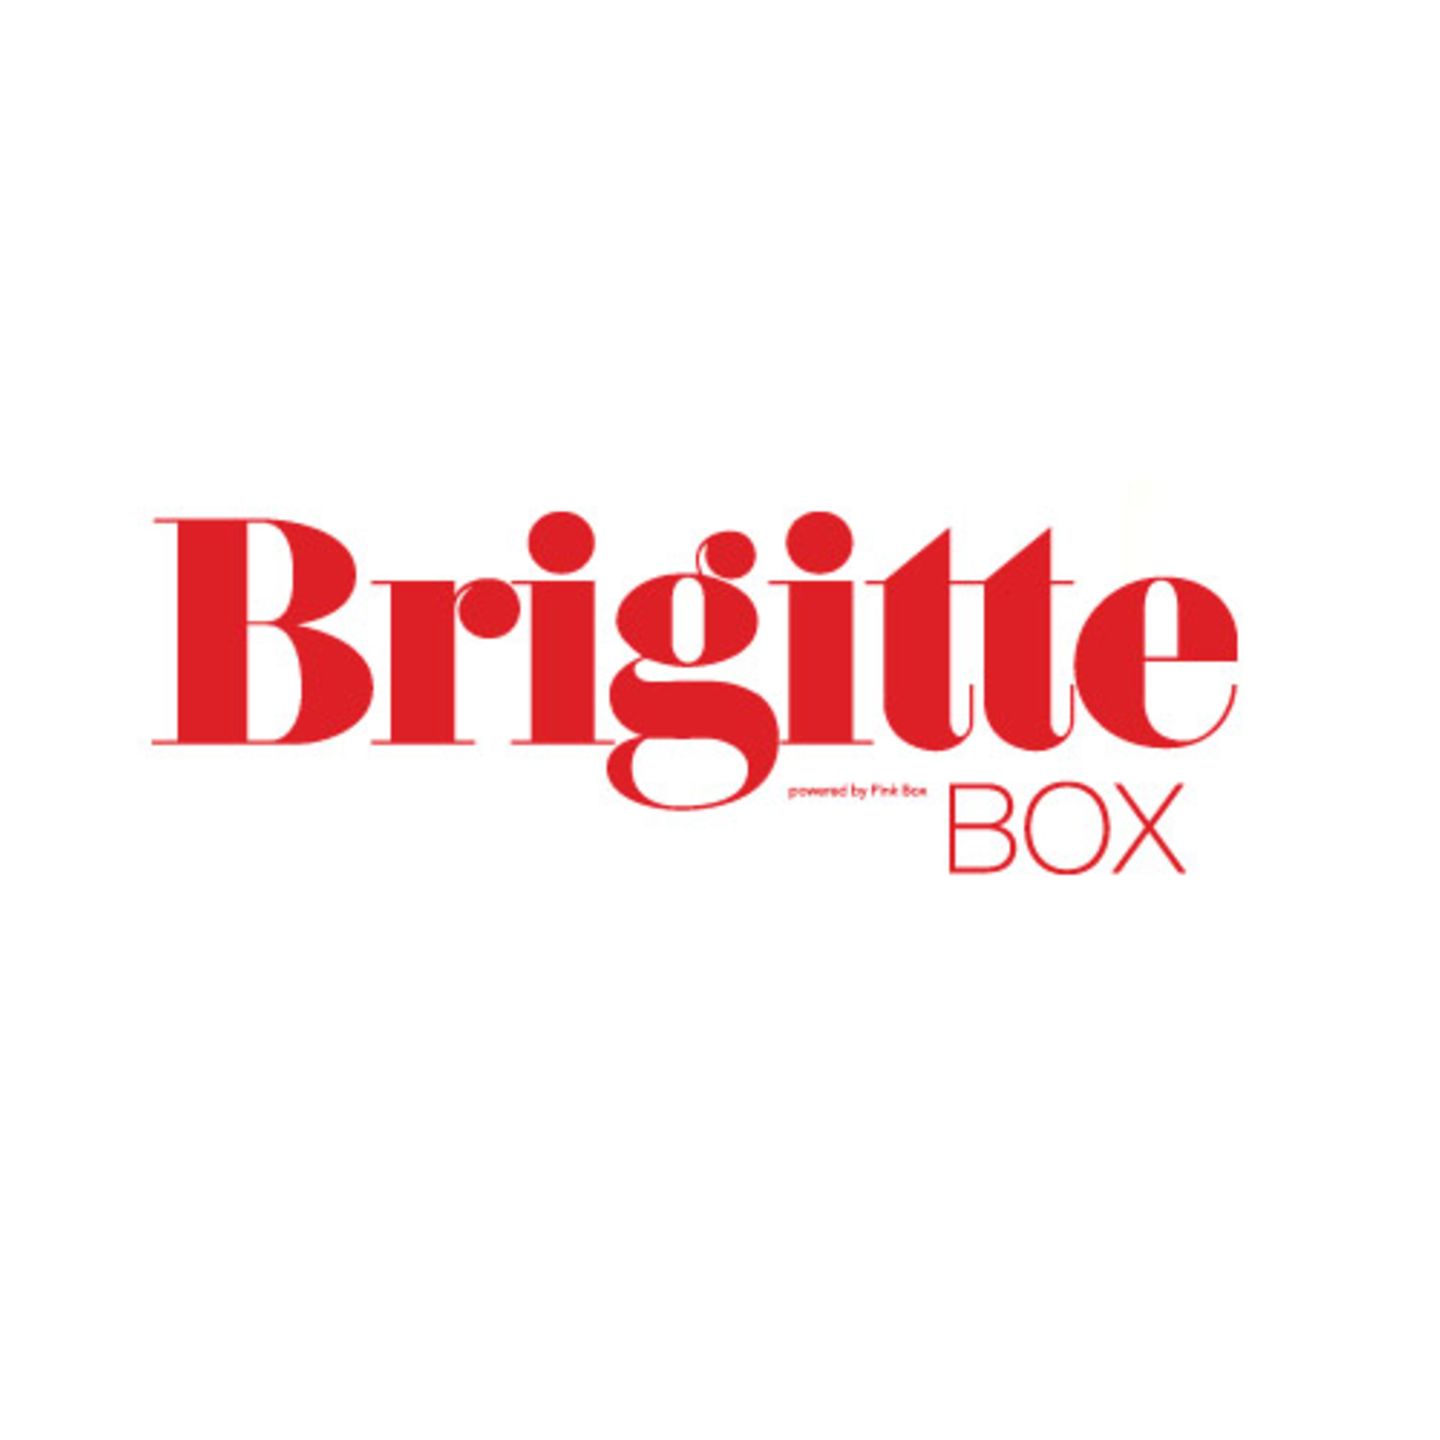 Die BRIGITTE Box präsentiert eine tolle Produkt-Mischung aus Beauty, Food und Lifestyle.